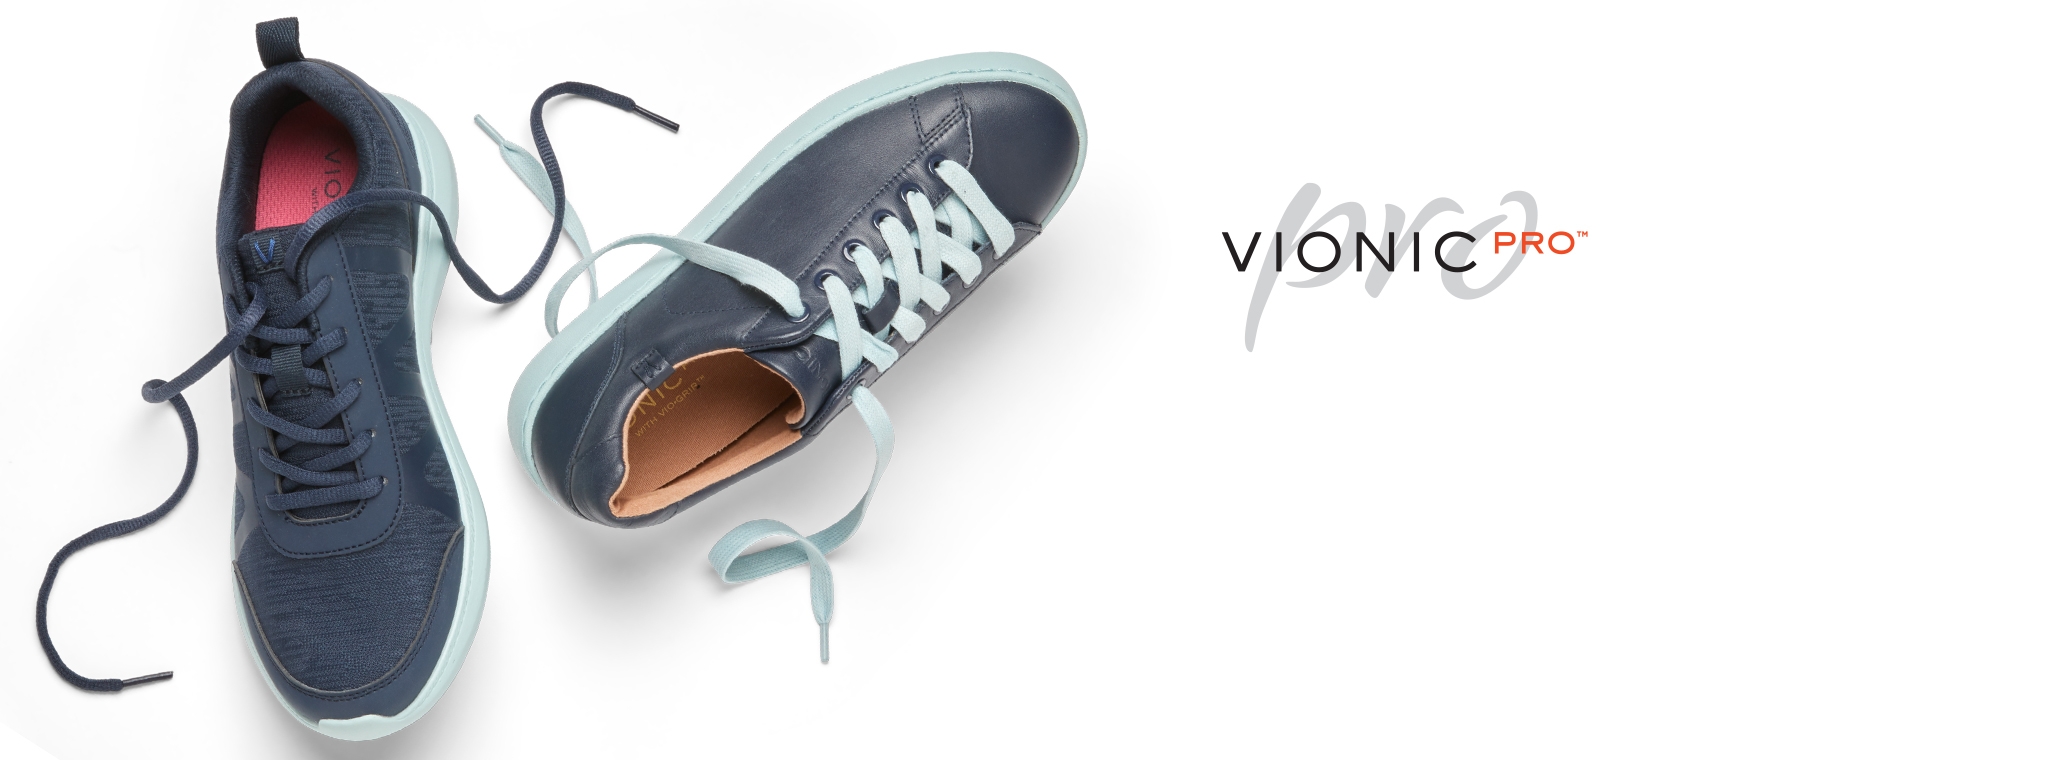 vionic shoes slip resistant